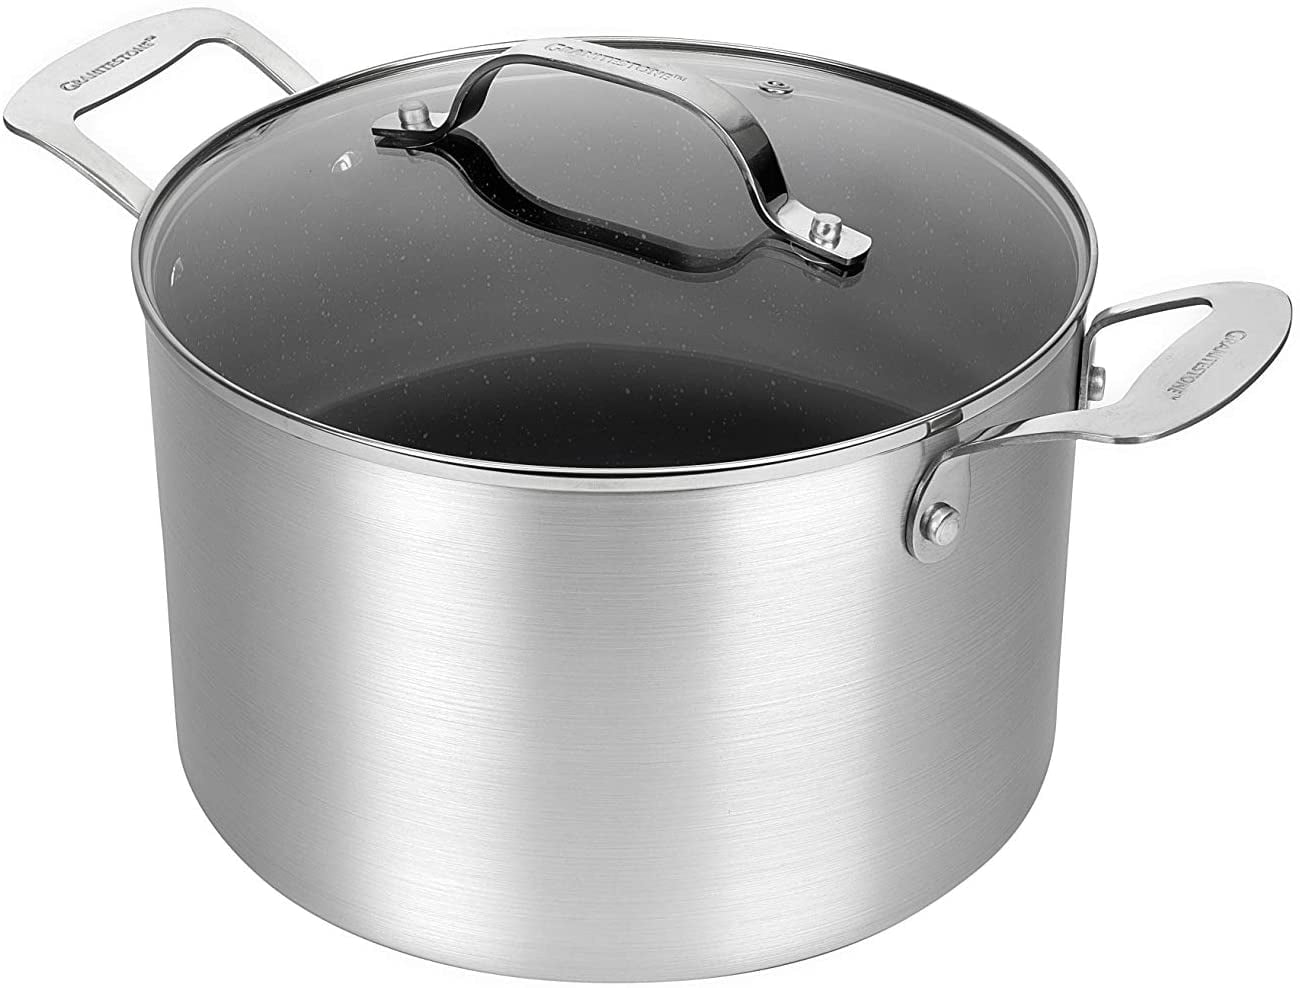 All-Clad Essentials Nonstick 4-qt soup Pot with Lid